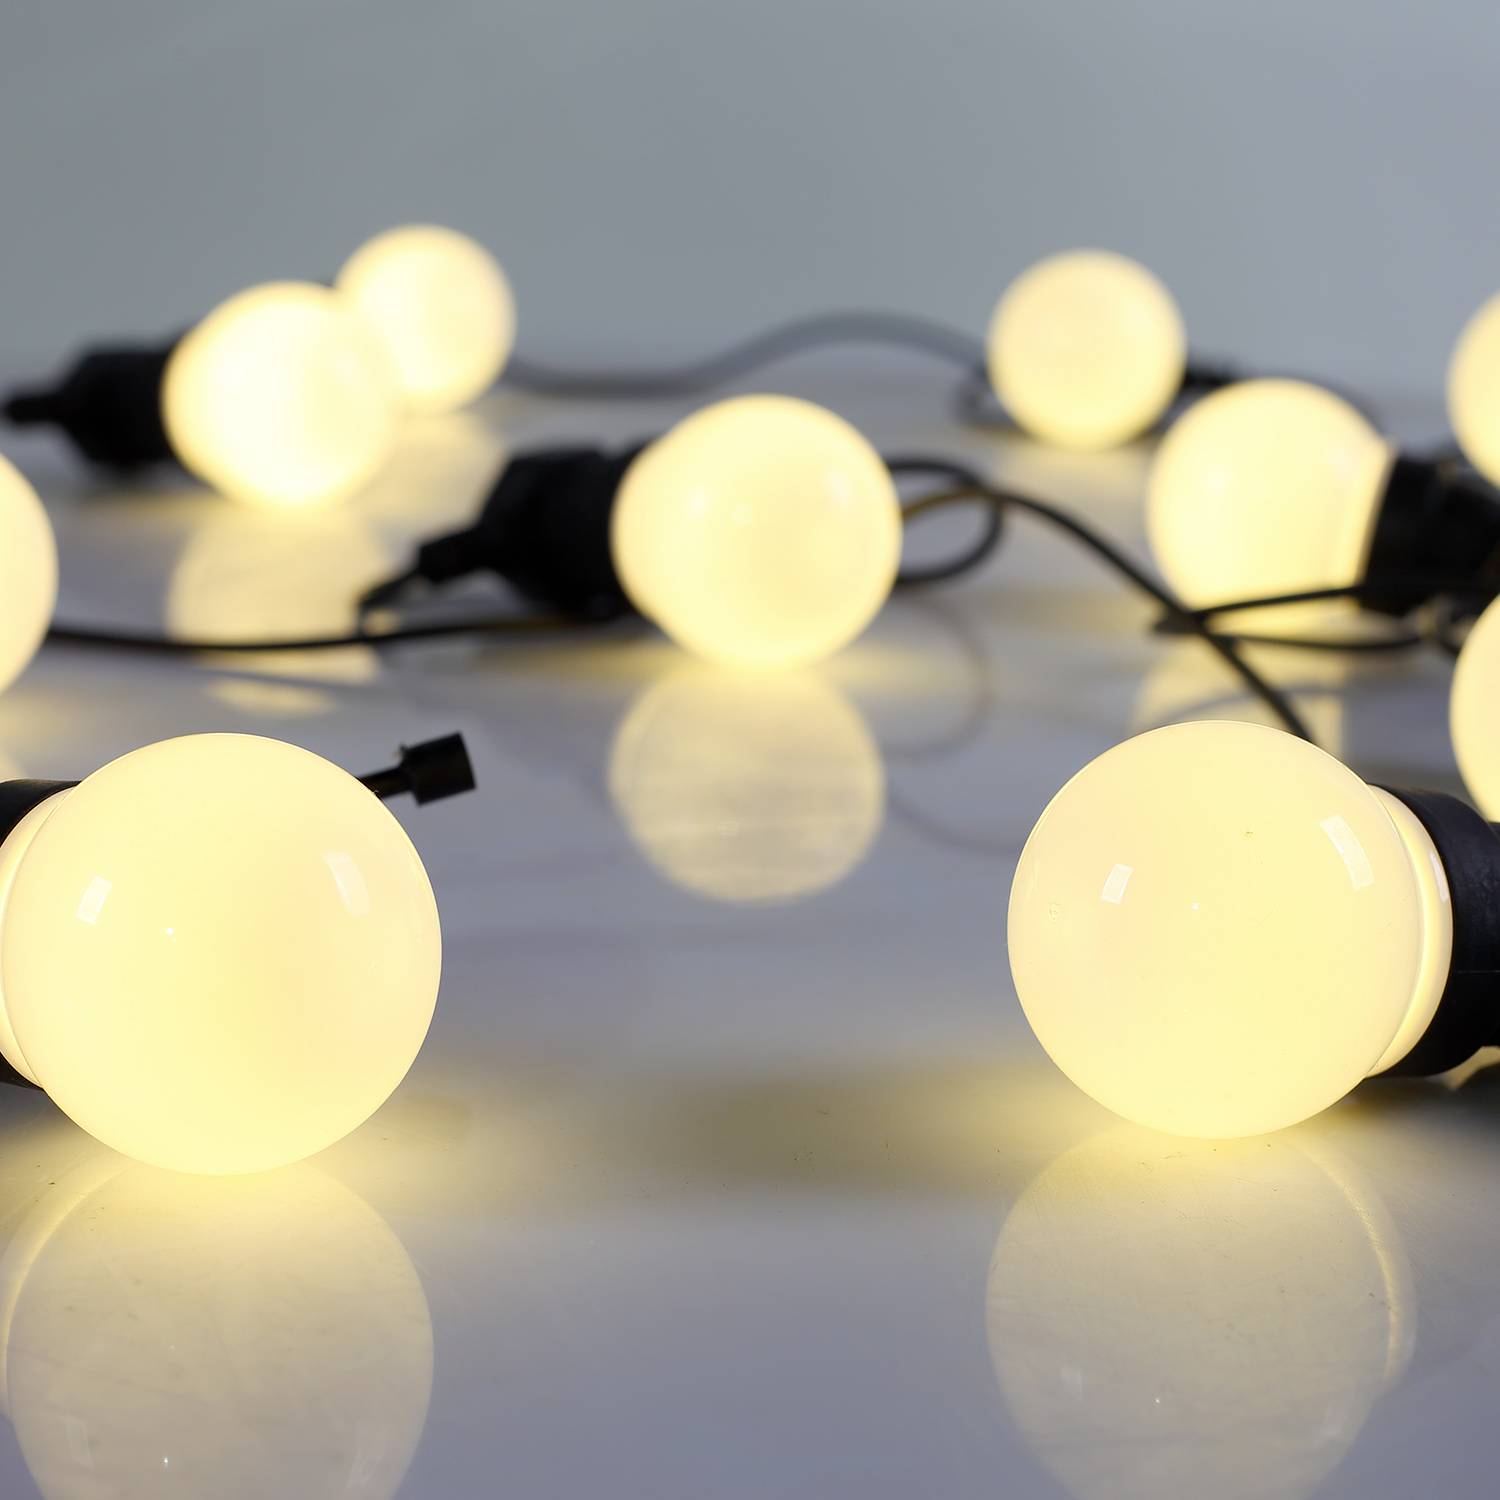 HERACLES - Luz ao ar livre com 10 lâmpadas, 50 LEDs braco, funcionamento a pilhas, função temporizador, 8 modos, 4,5 m de comprimento Photo5